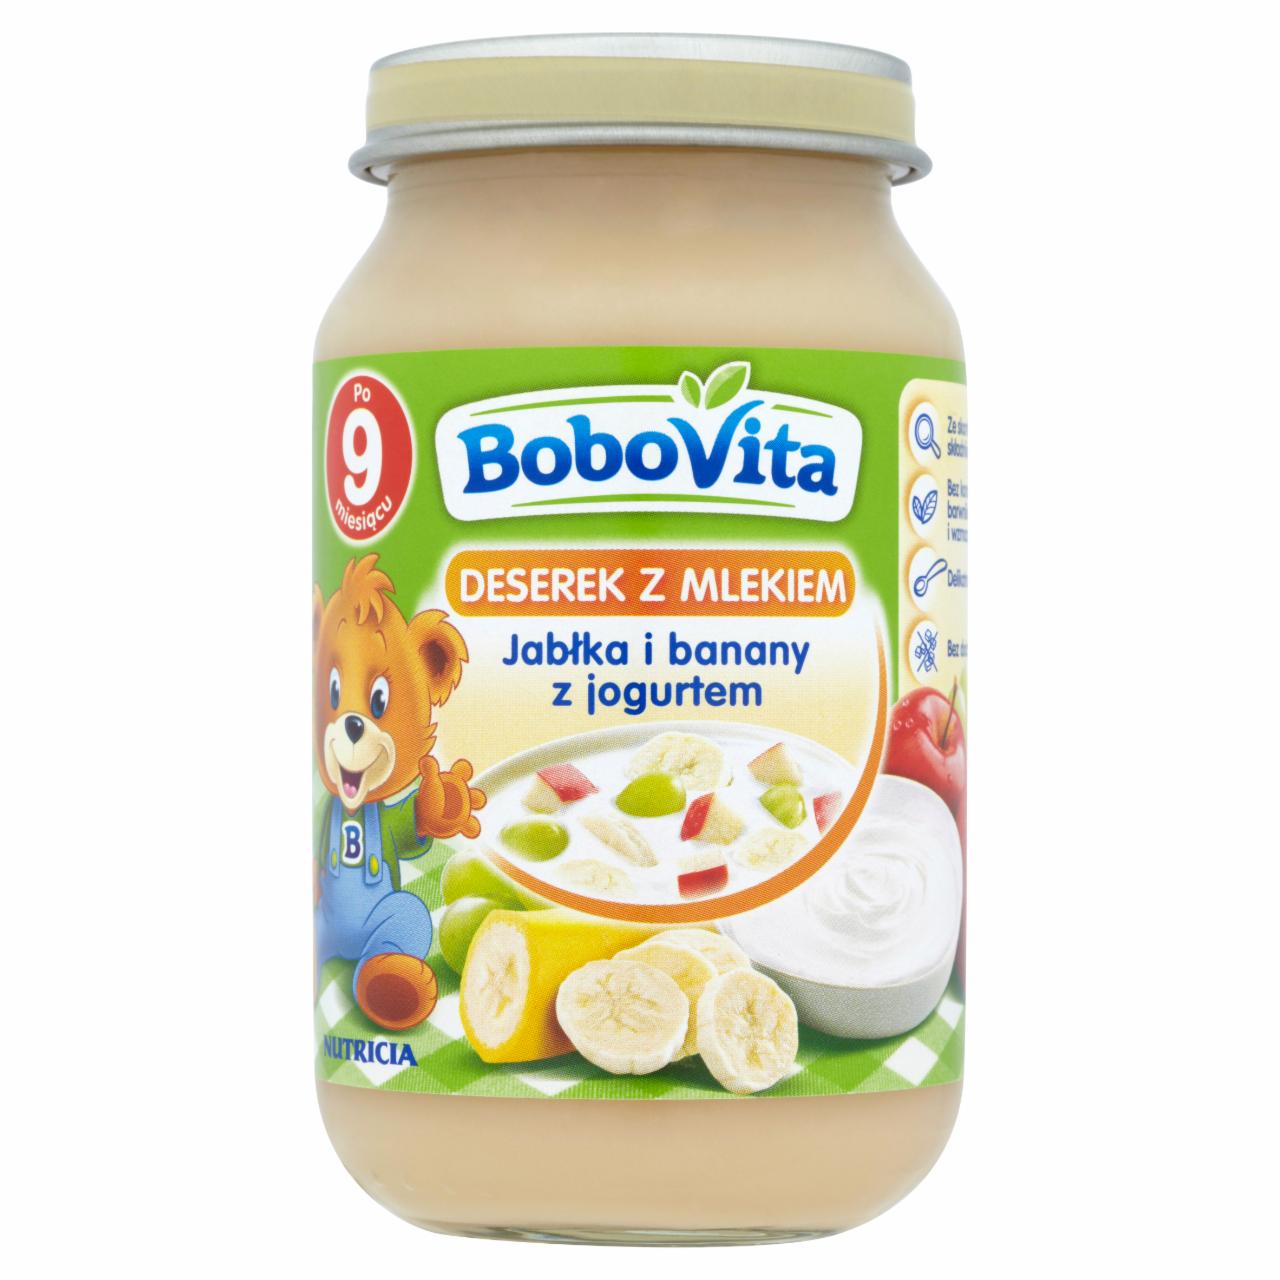 Zdjęcia - BoboVita Deserek z mlekiem Jabłka i banany z jogurtem po 9 miesiącu 190 g